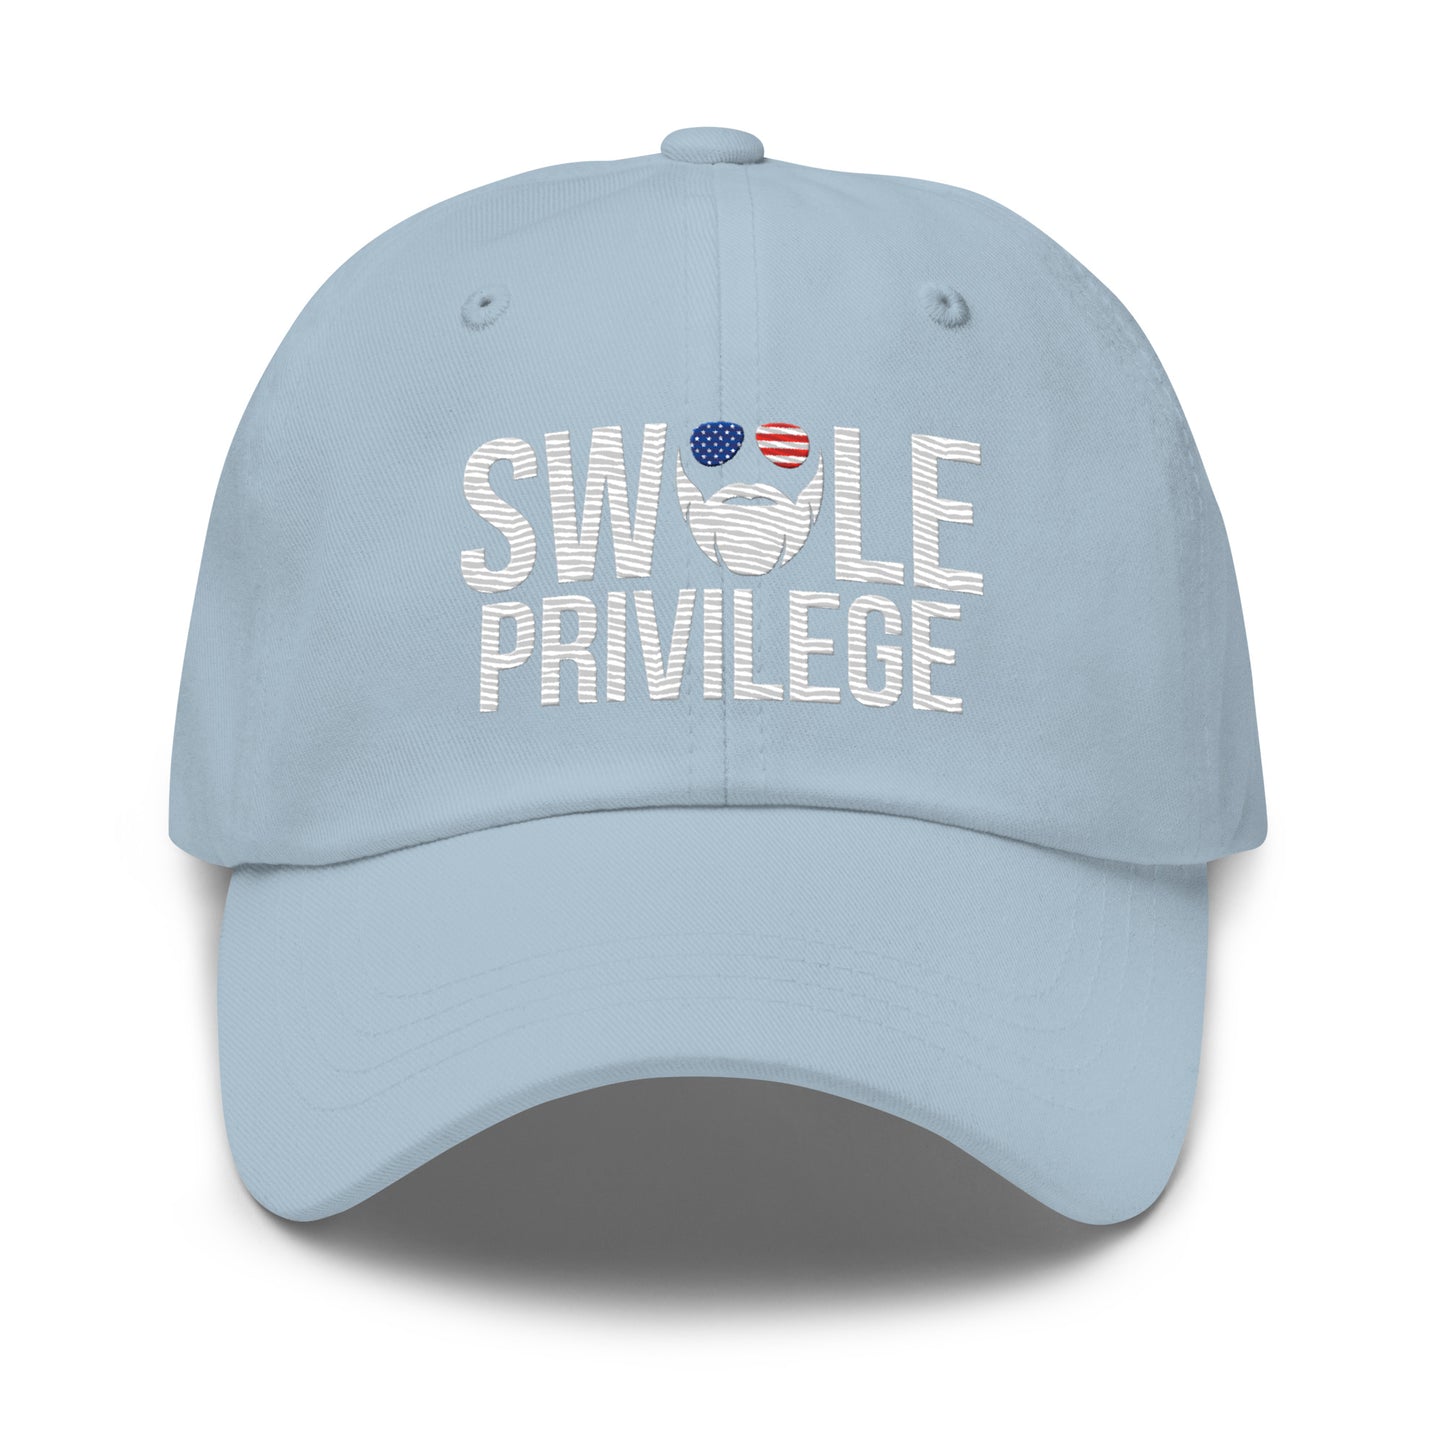 Swole Privilege Dad Hat